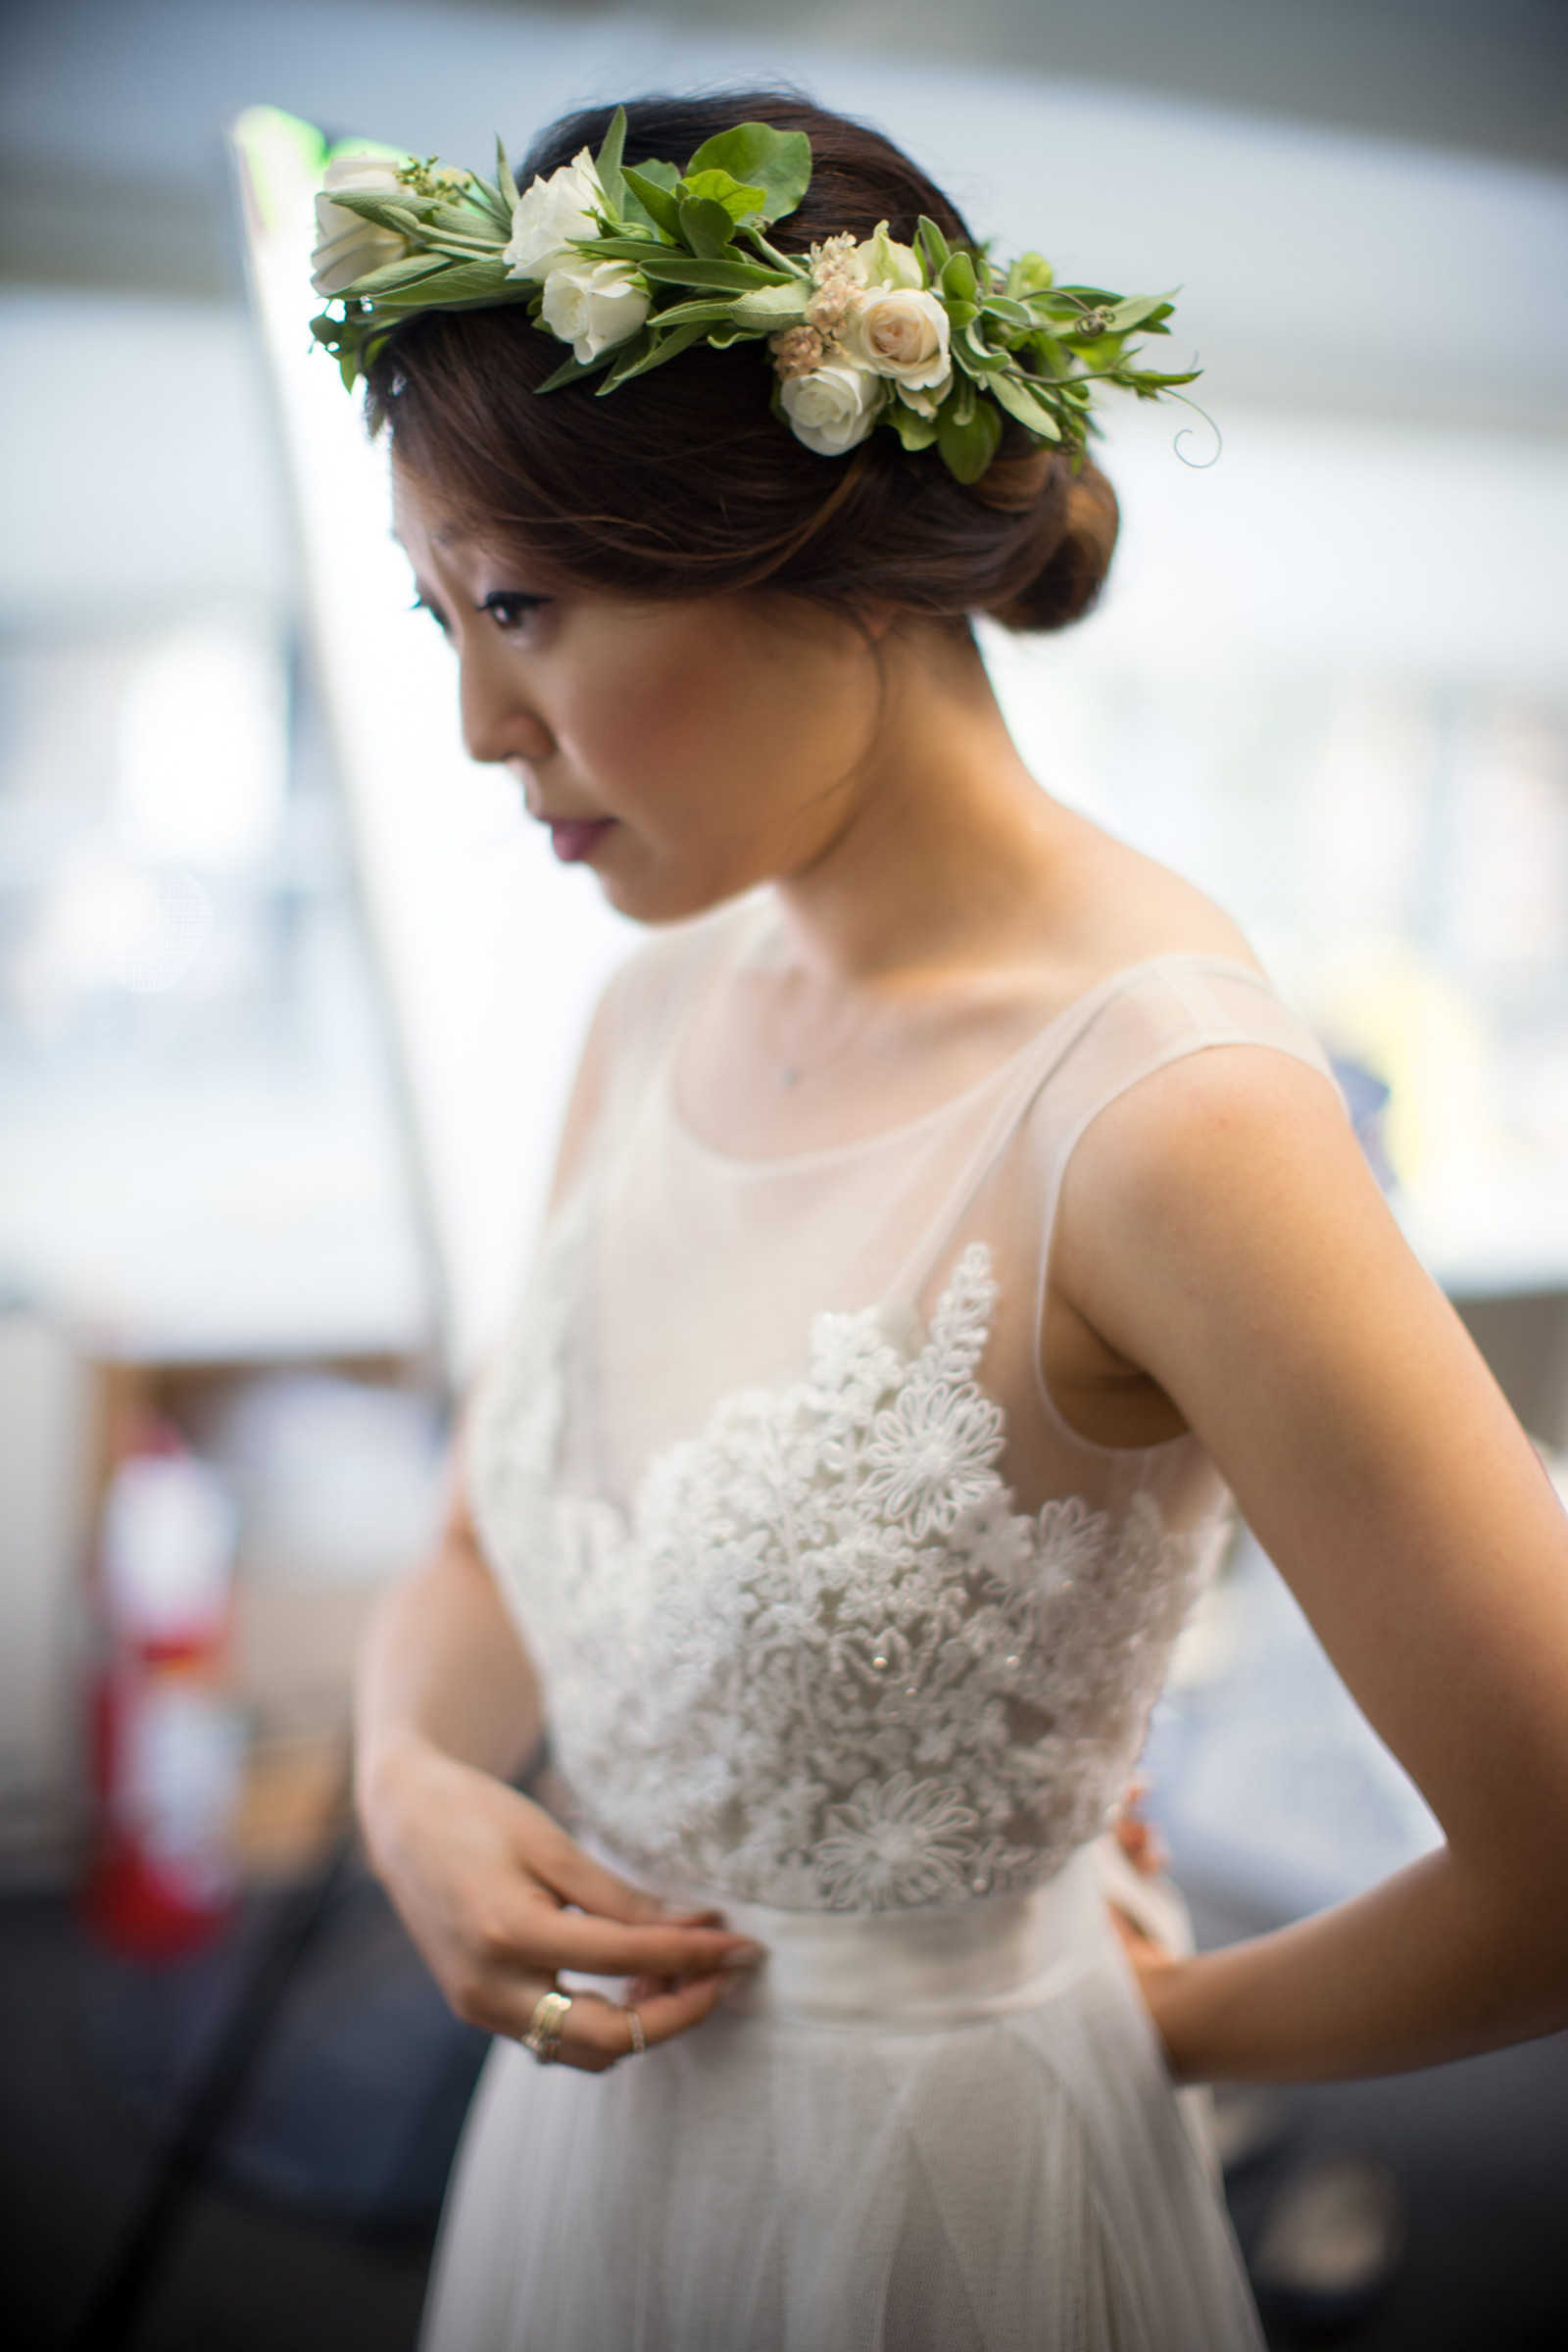 Hochzeitsideen Standesamt
 33 Best Fotografie Über Mode Standesamt Bridal Floral